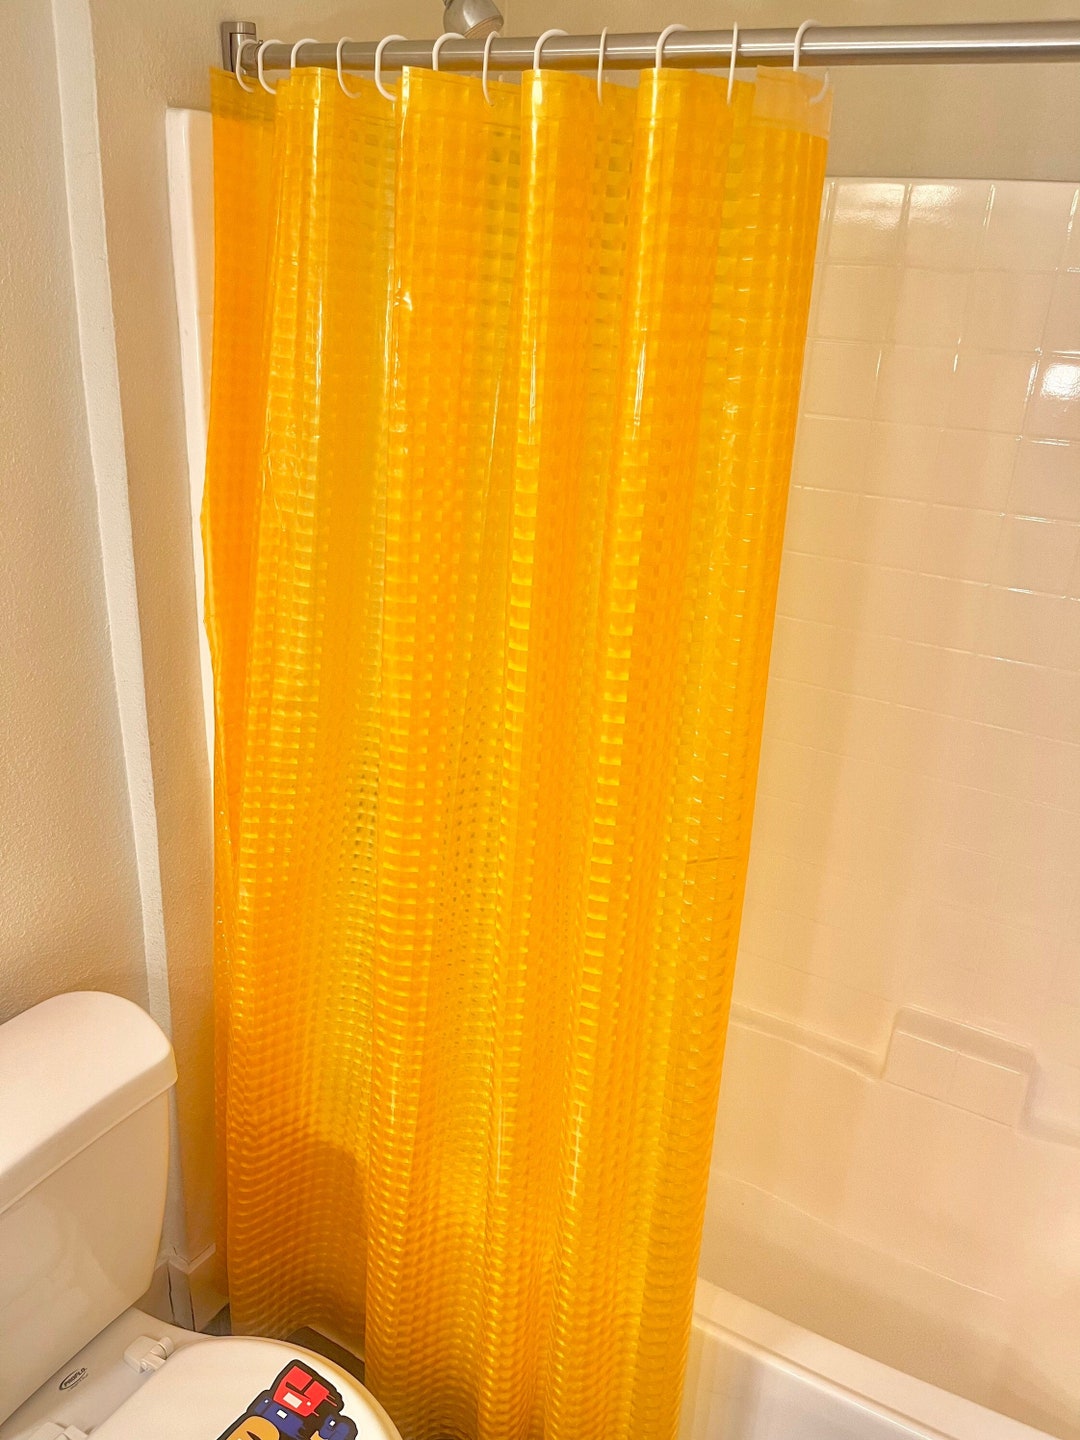 Orange Boho Shower Curtains Orange Room Decor Shower Curtains Boho Decor  Halloween Home Decor Curtain Bathroom Decor Bathroom Art -  Canada